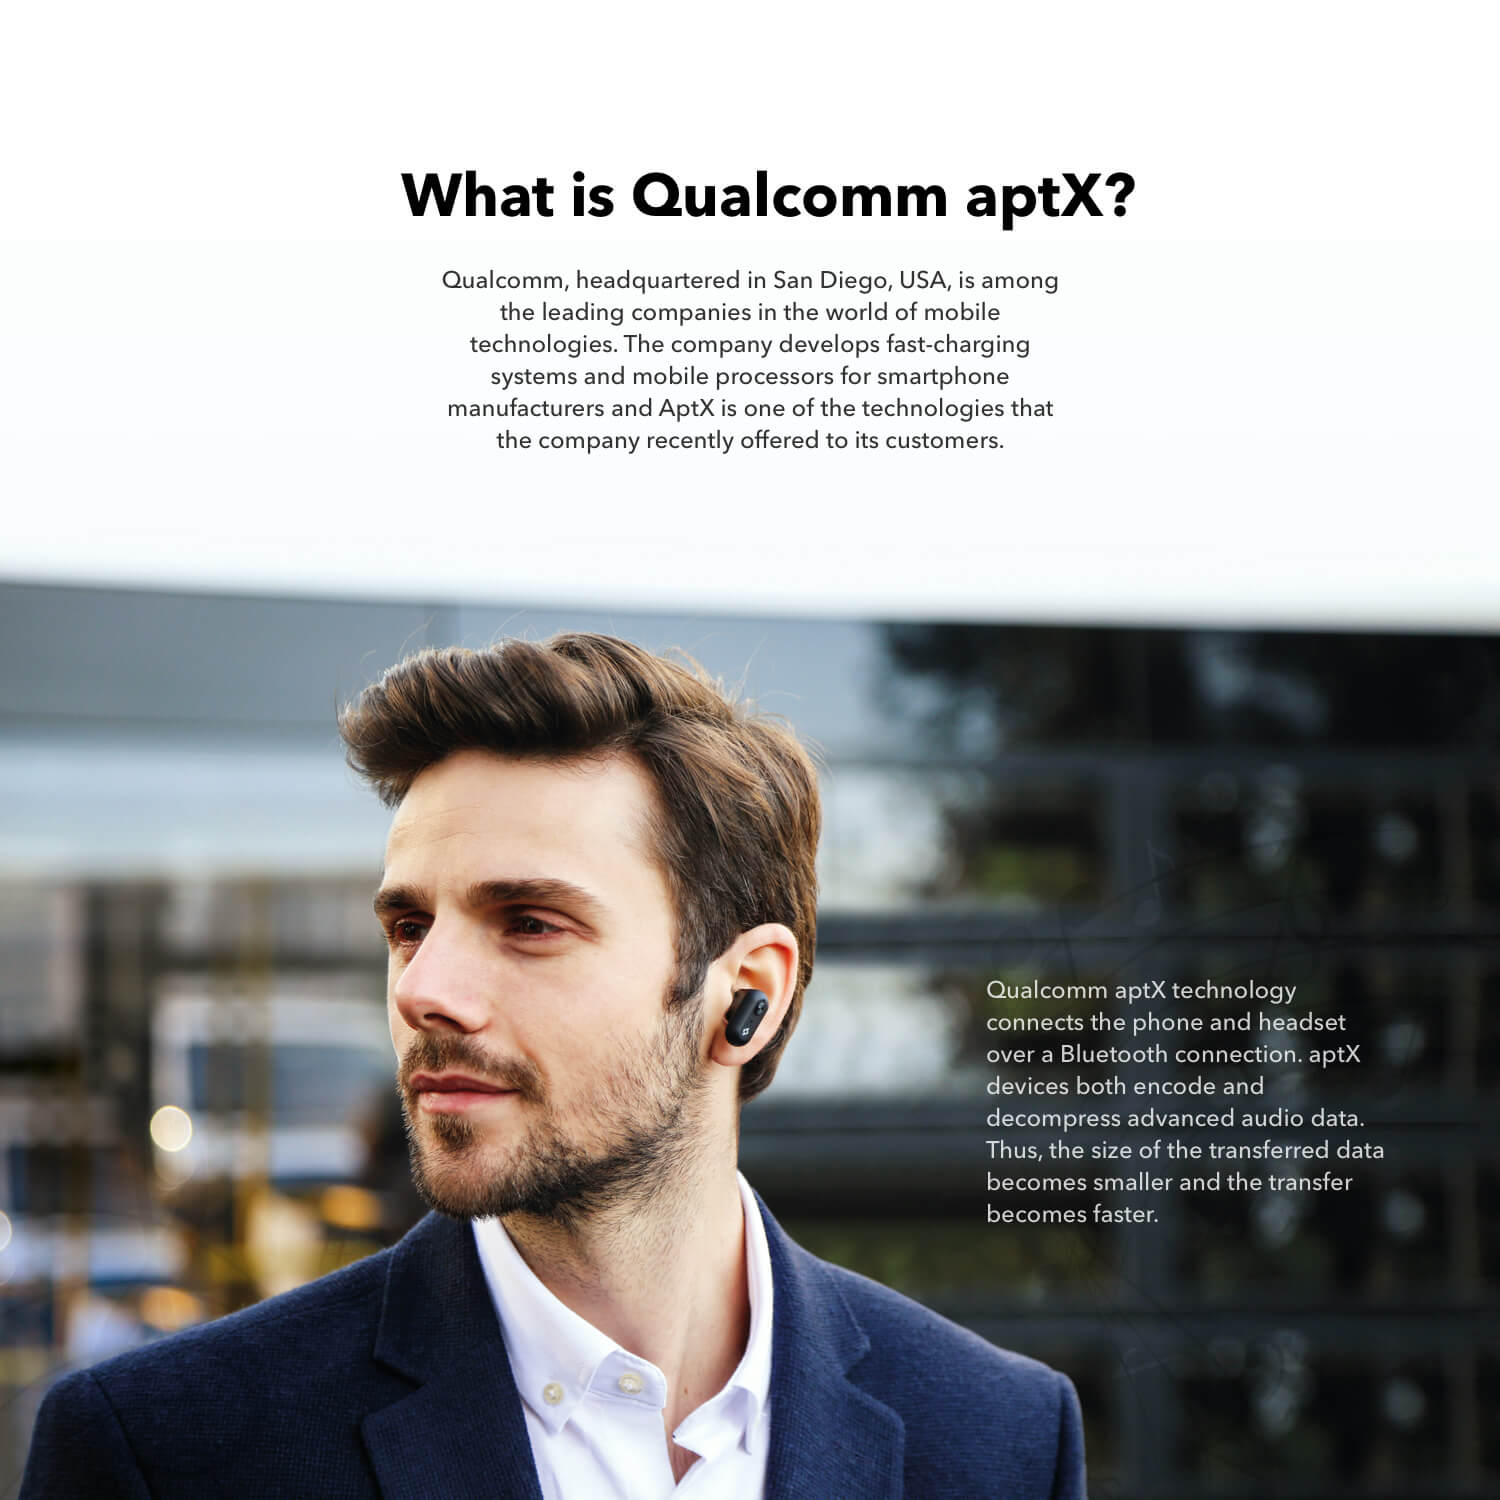 What is Qualcomm aptX